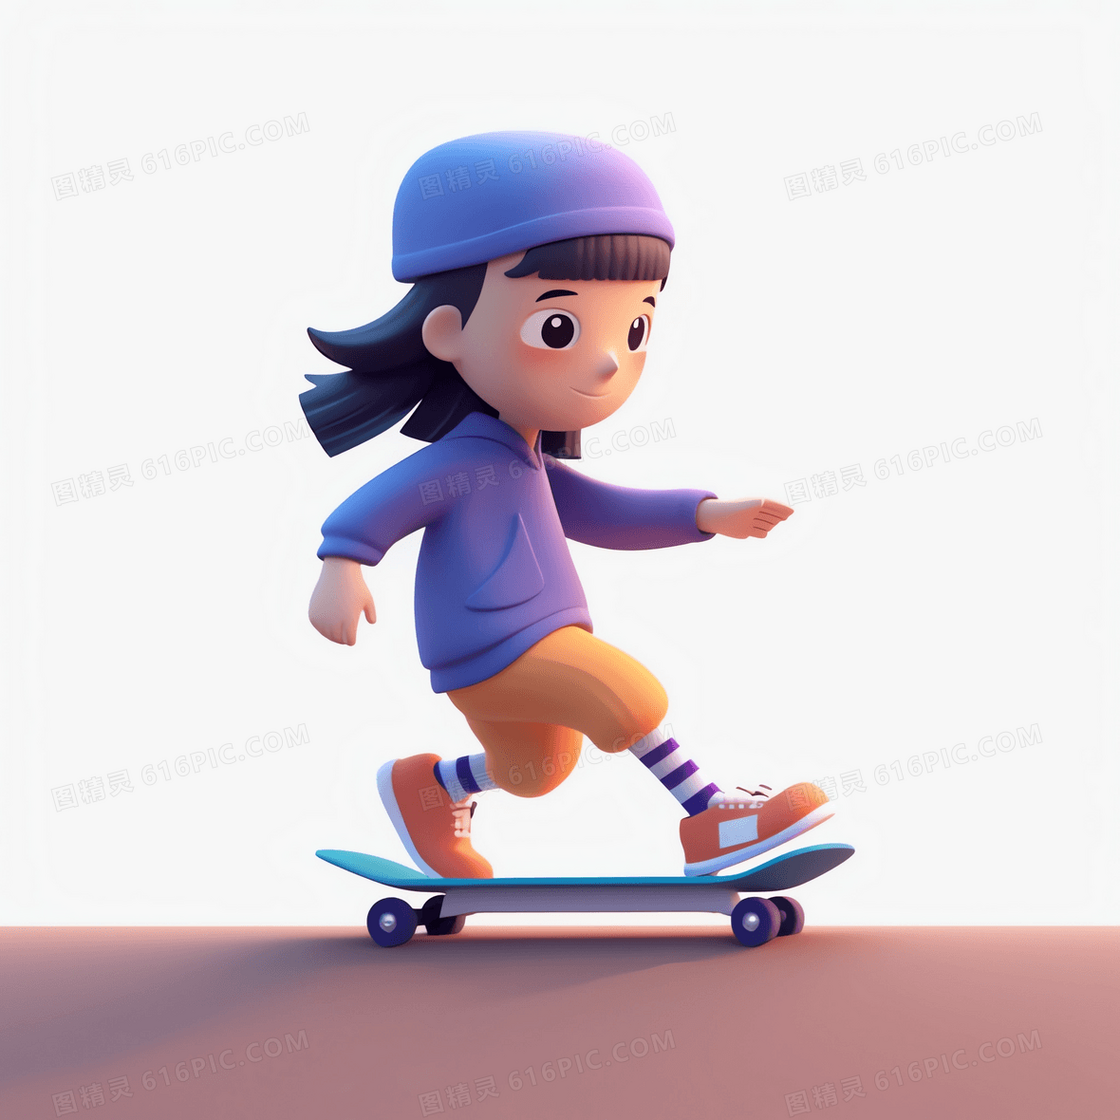 在滑板上反向站立的可爱女孩3D模型